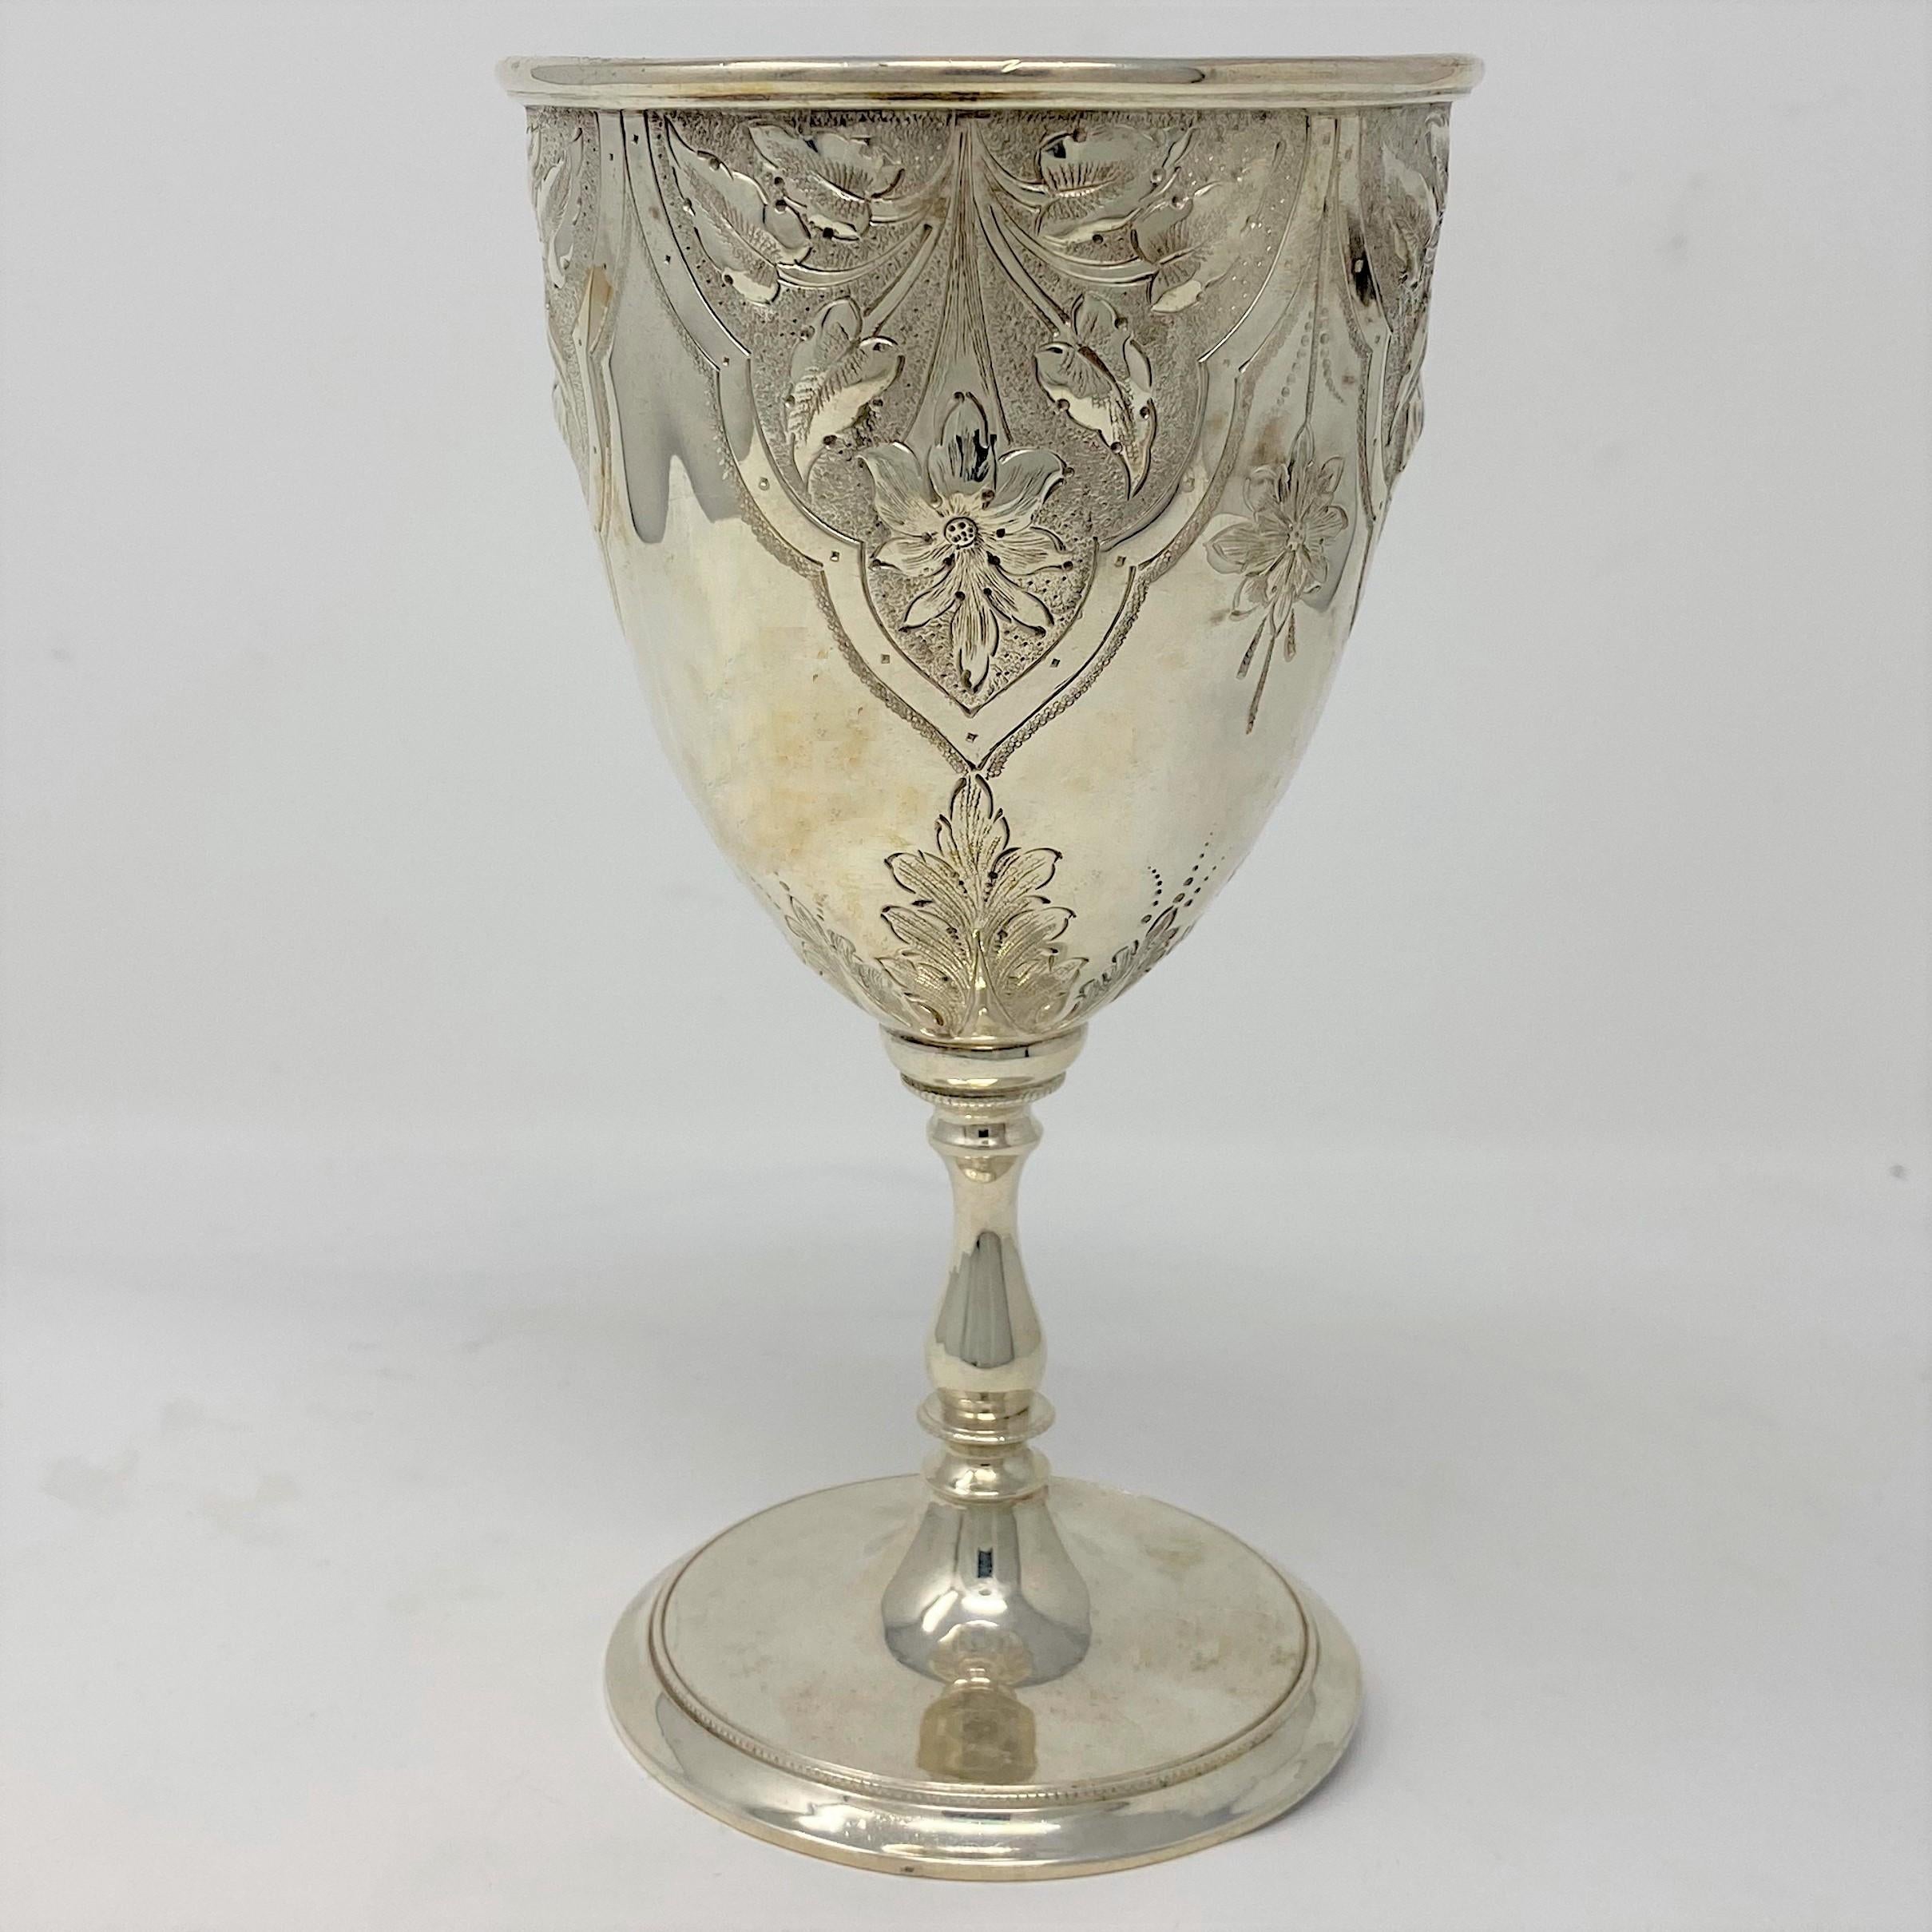 Antique English Sheffield silver goblet, circa 1880.
GOB003.